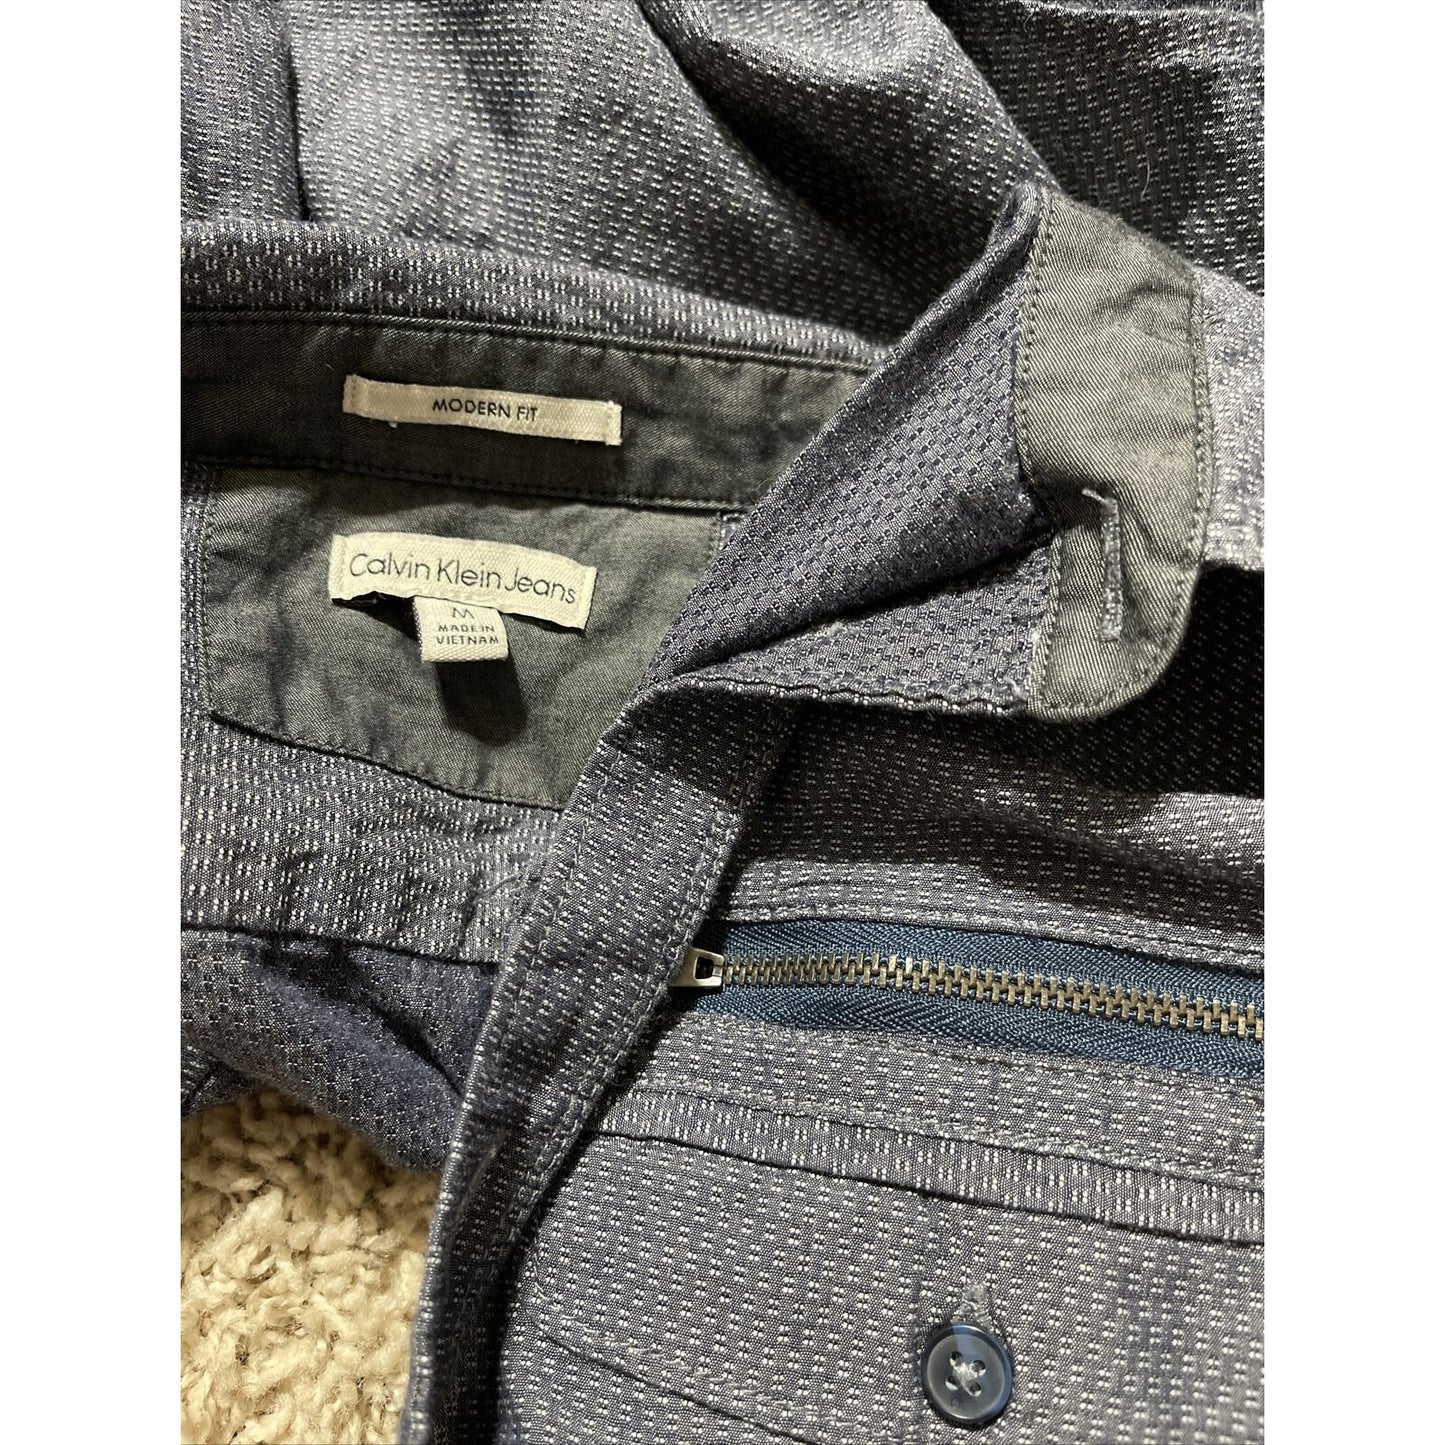 Men’s Calvin Klein button up long sleeve dark Blue Shirt Zippered Pocket Medium